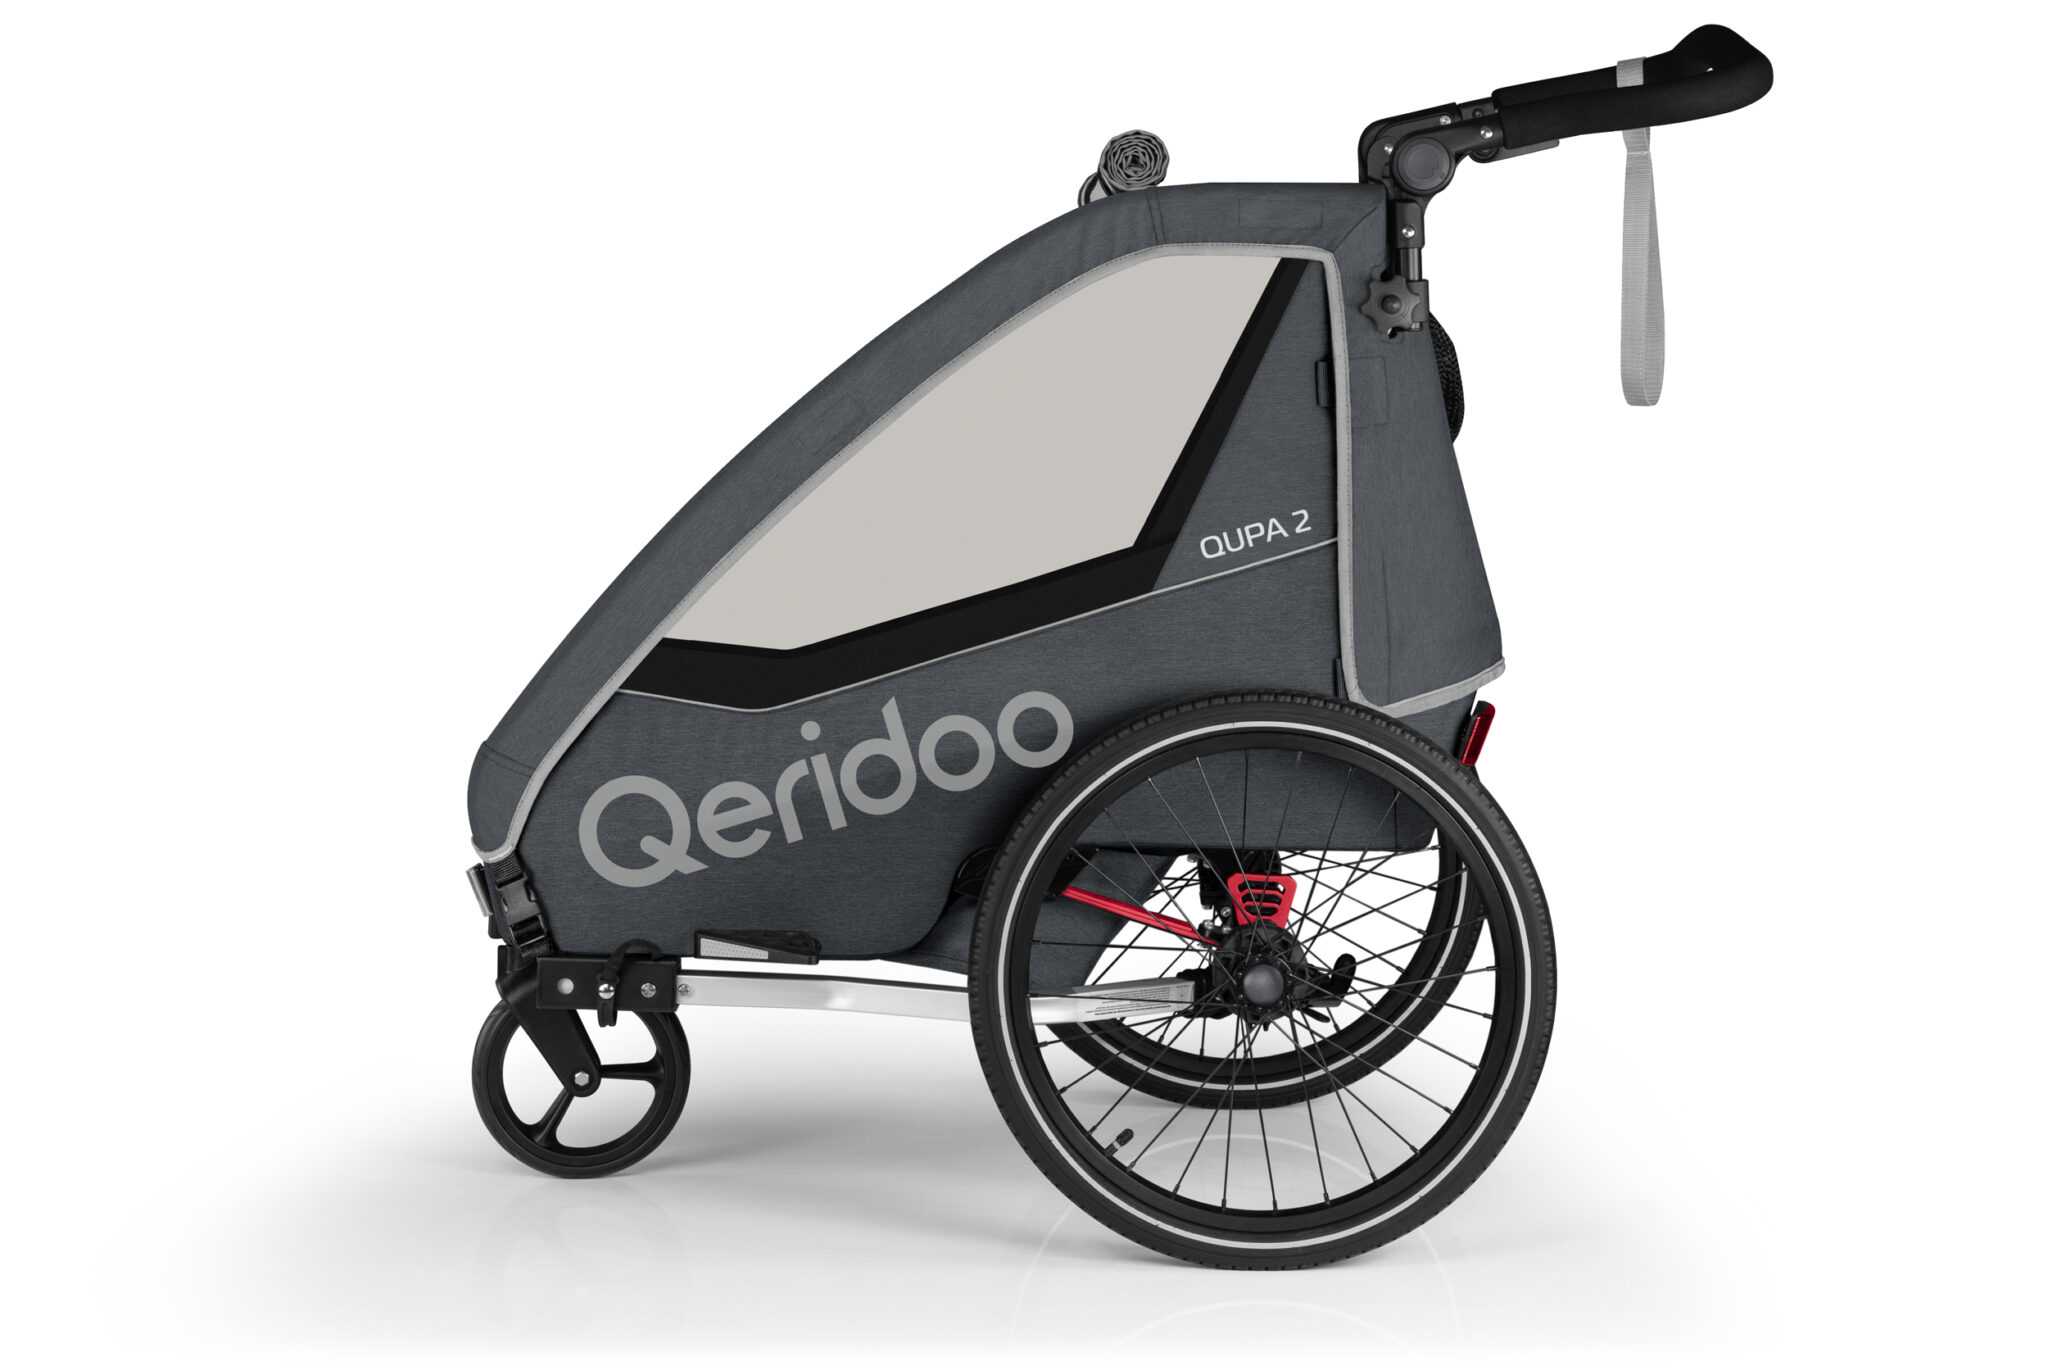 Produktbild von Qeridoo Qupa 2 Grau Q-QUP2-22-GR - Kinderfahrradanhänger mit Federung, Hand-Parkbremse und Buggyrad